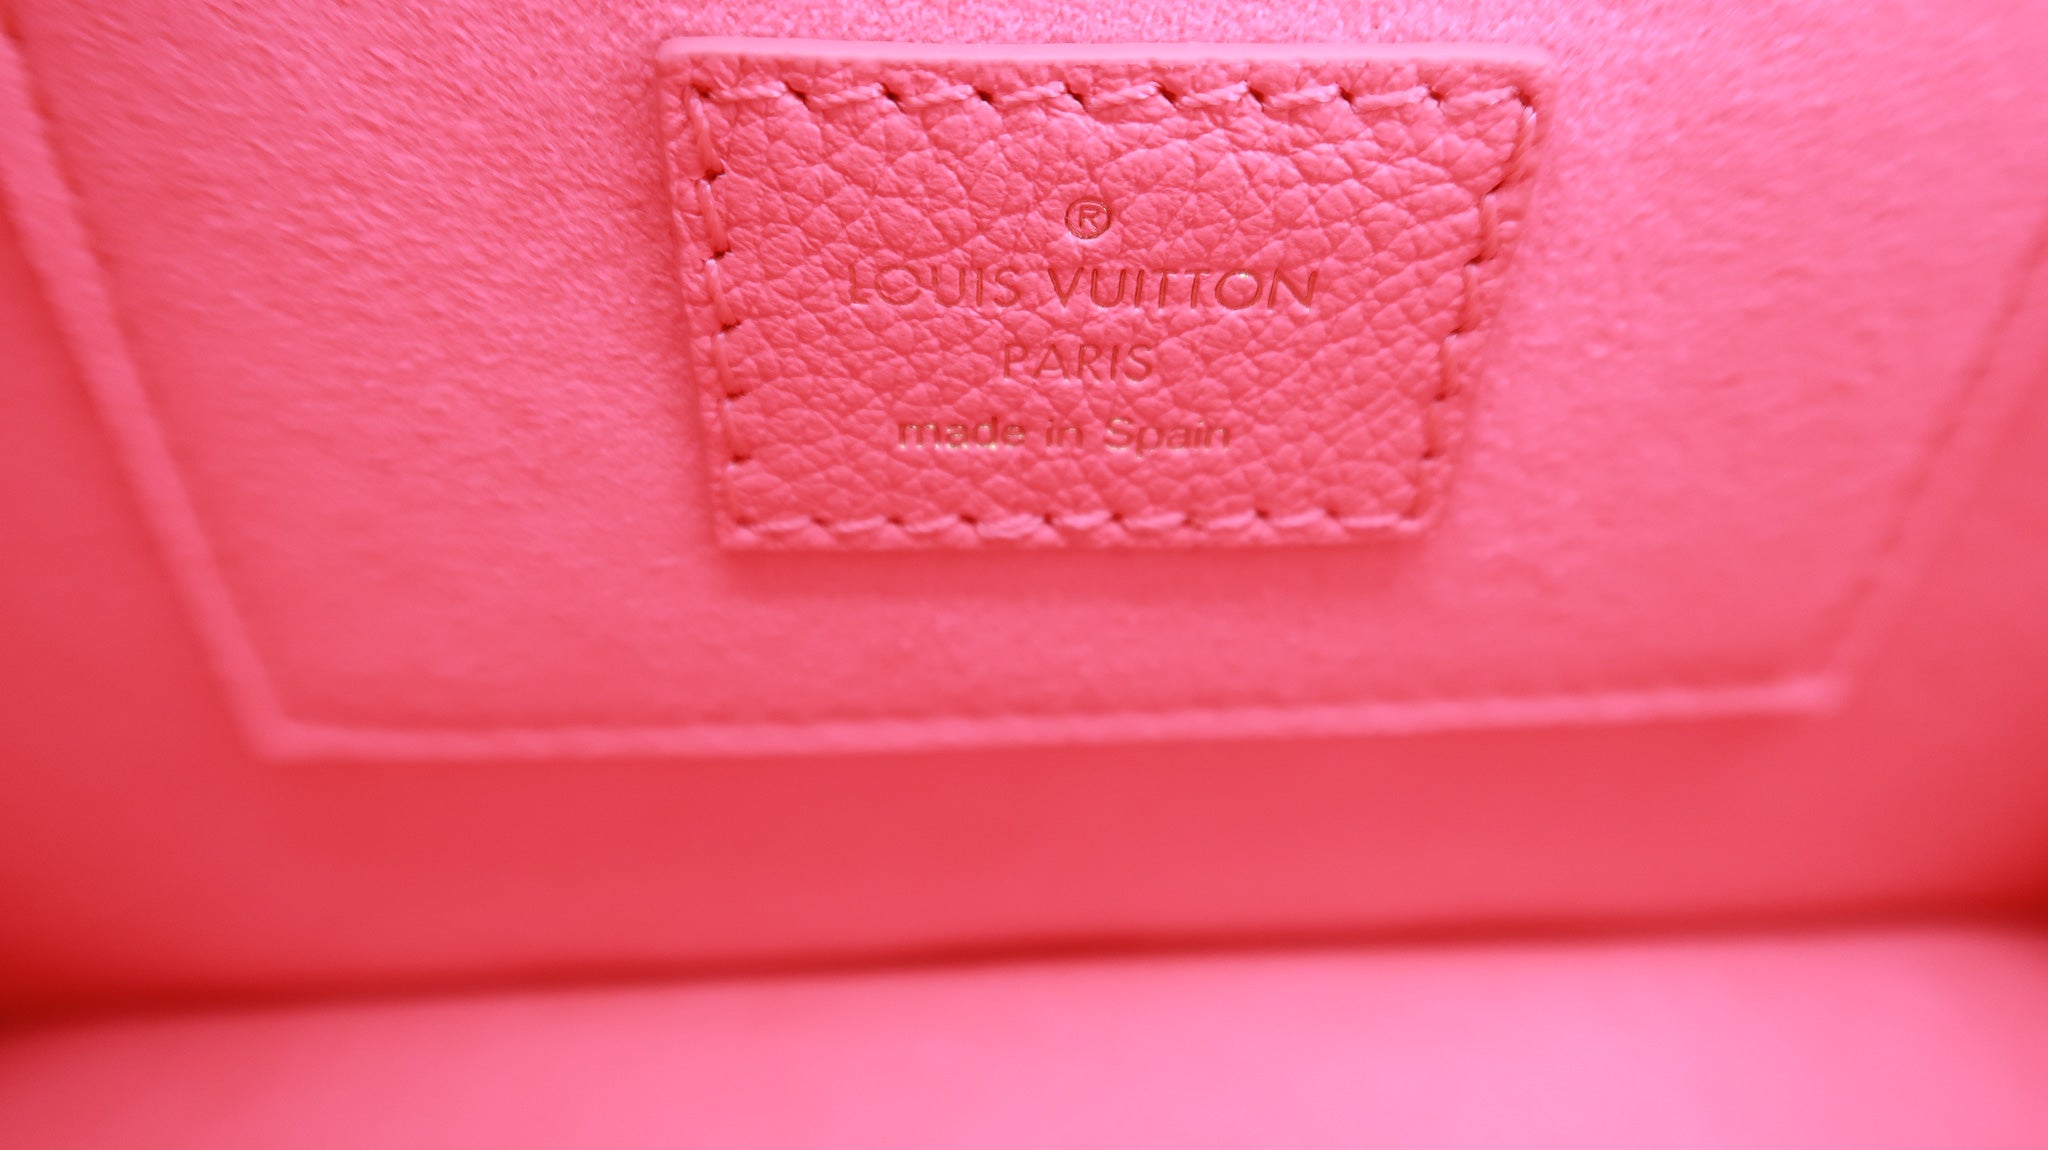 M20747 Louis Vuitton Rose Fluo Mini Dauphine Handbag